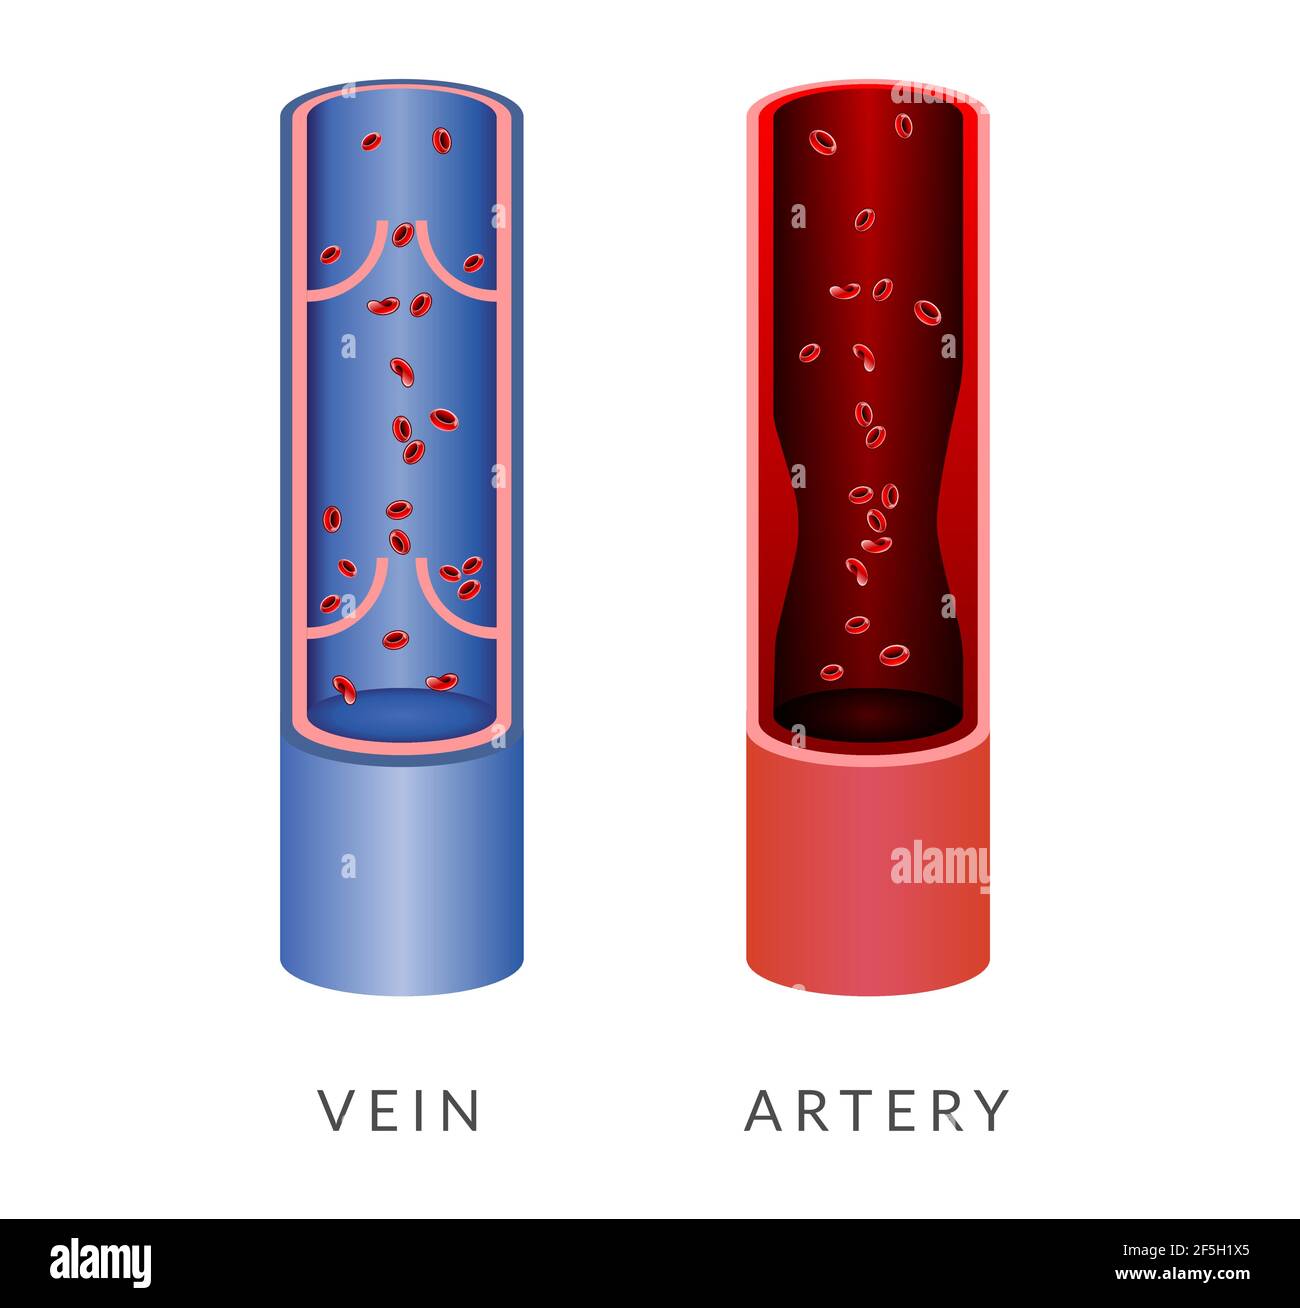 Illustrazione di vena e arteria come file EPS Illustrazione Vettoriale